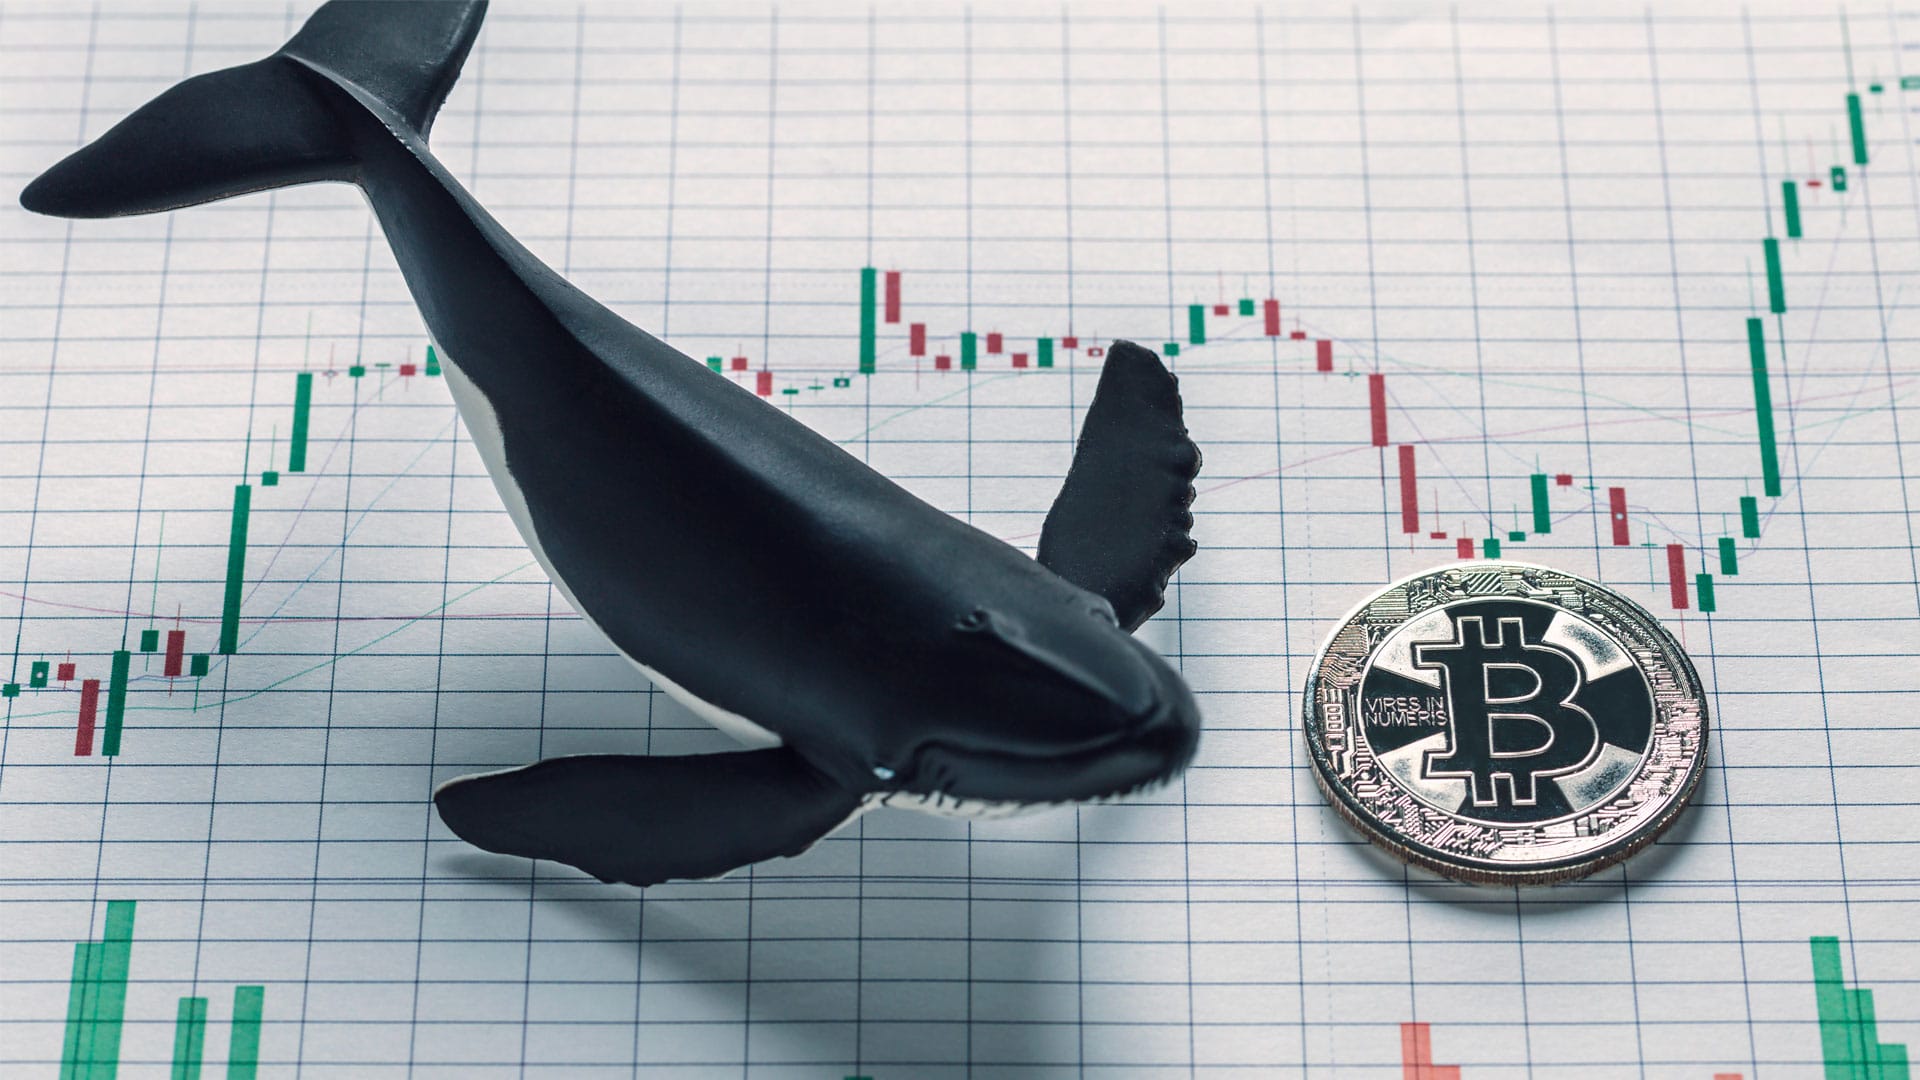 Maior baleia de Bitcoin segue comprando, apesar da queda